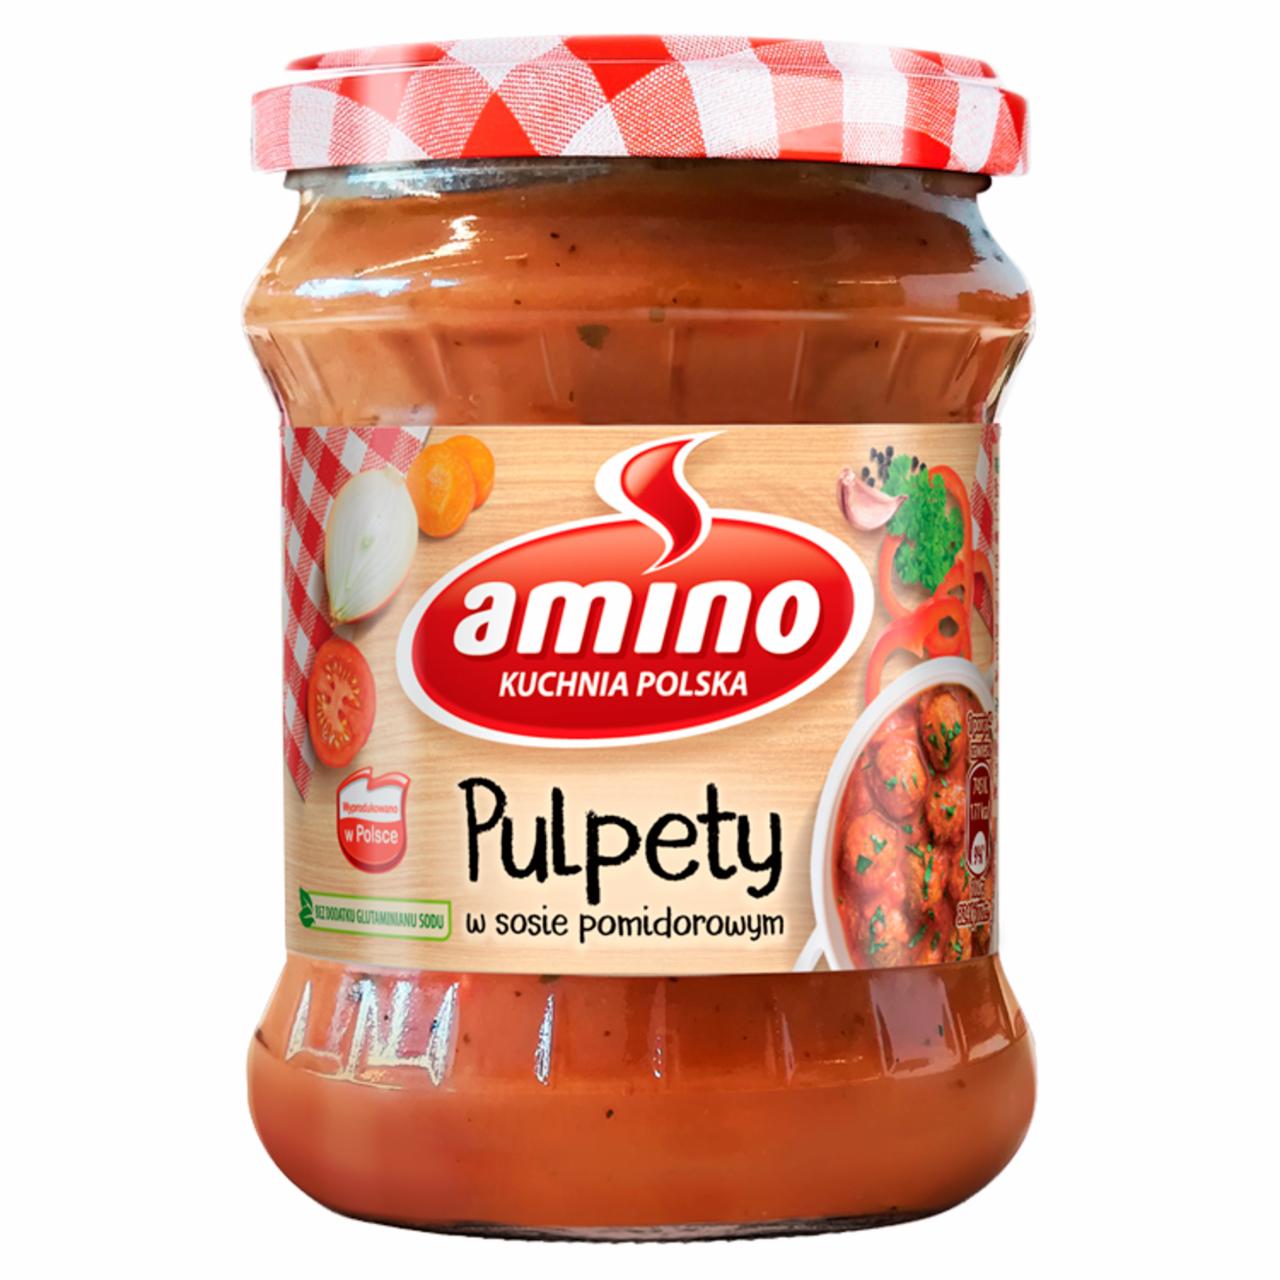 Zdjęcia - Amino Pulpety w sosie pomidorowym 460 g